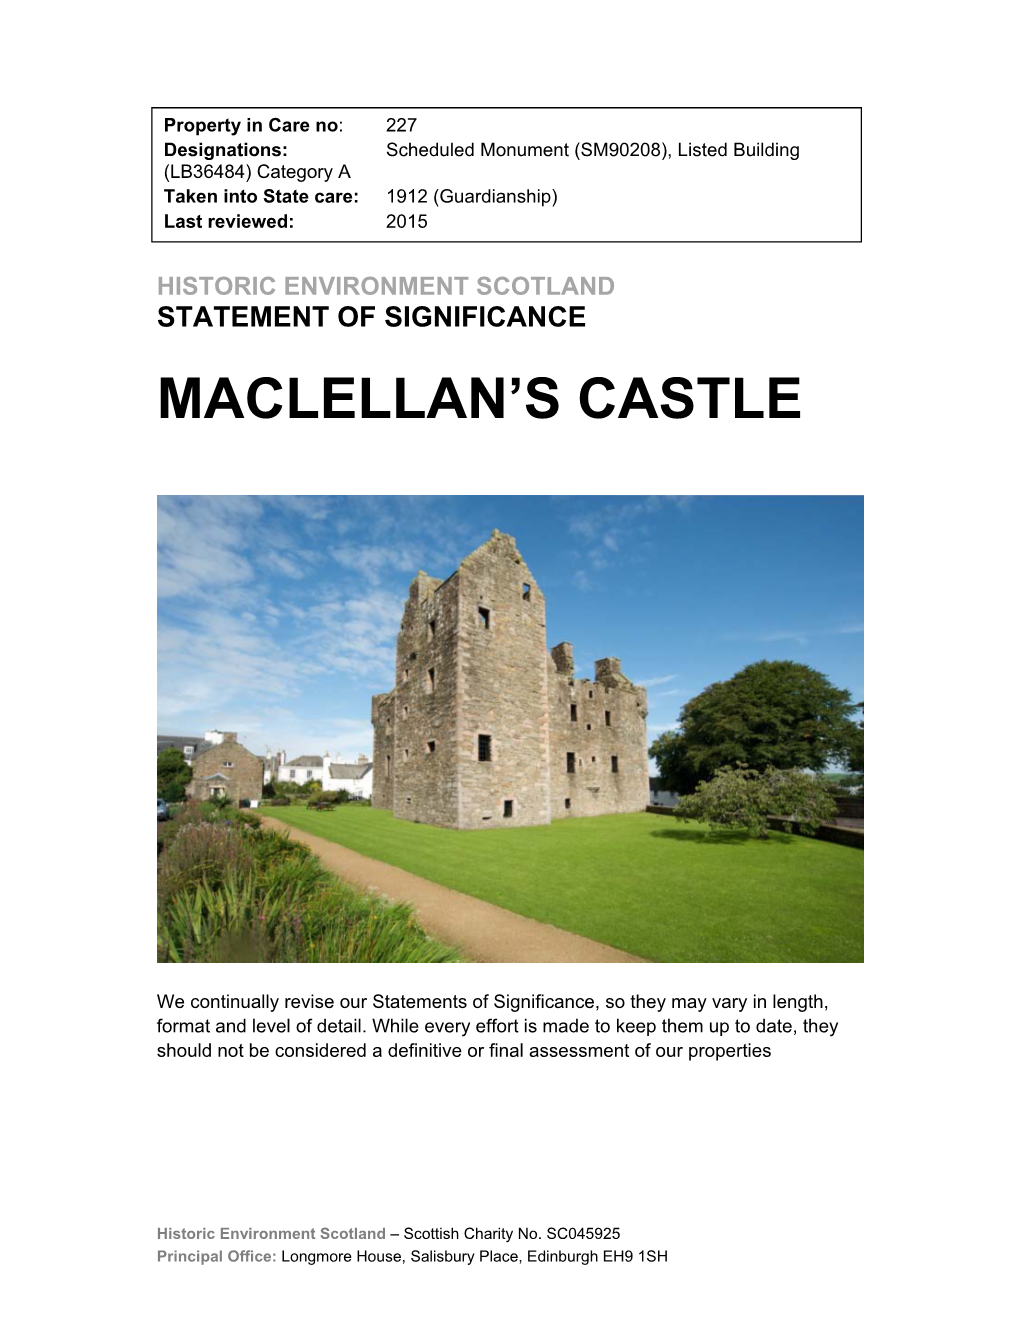 Maclellan's Castle